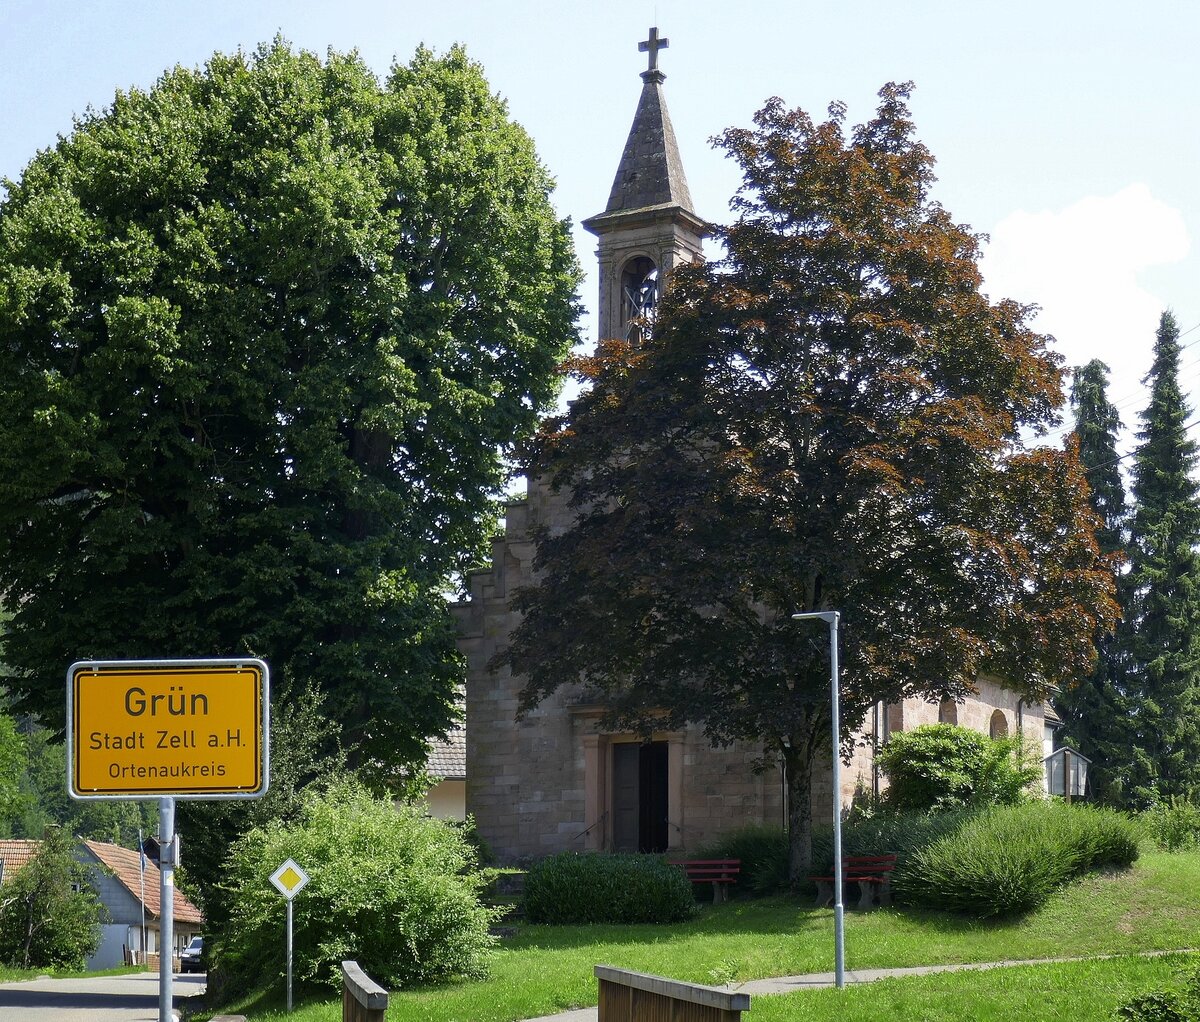 Grn, Stadtteil von Zell am Harmersbach im mittleren Schwarzwald, die Michaelskapelle, feierte 2017 ihr 450-jhriges Jubileum und ist damit die lteste Kapelle im Harmersbachtal, Juli 2021